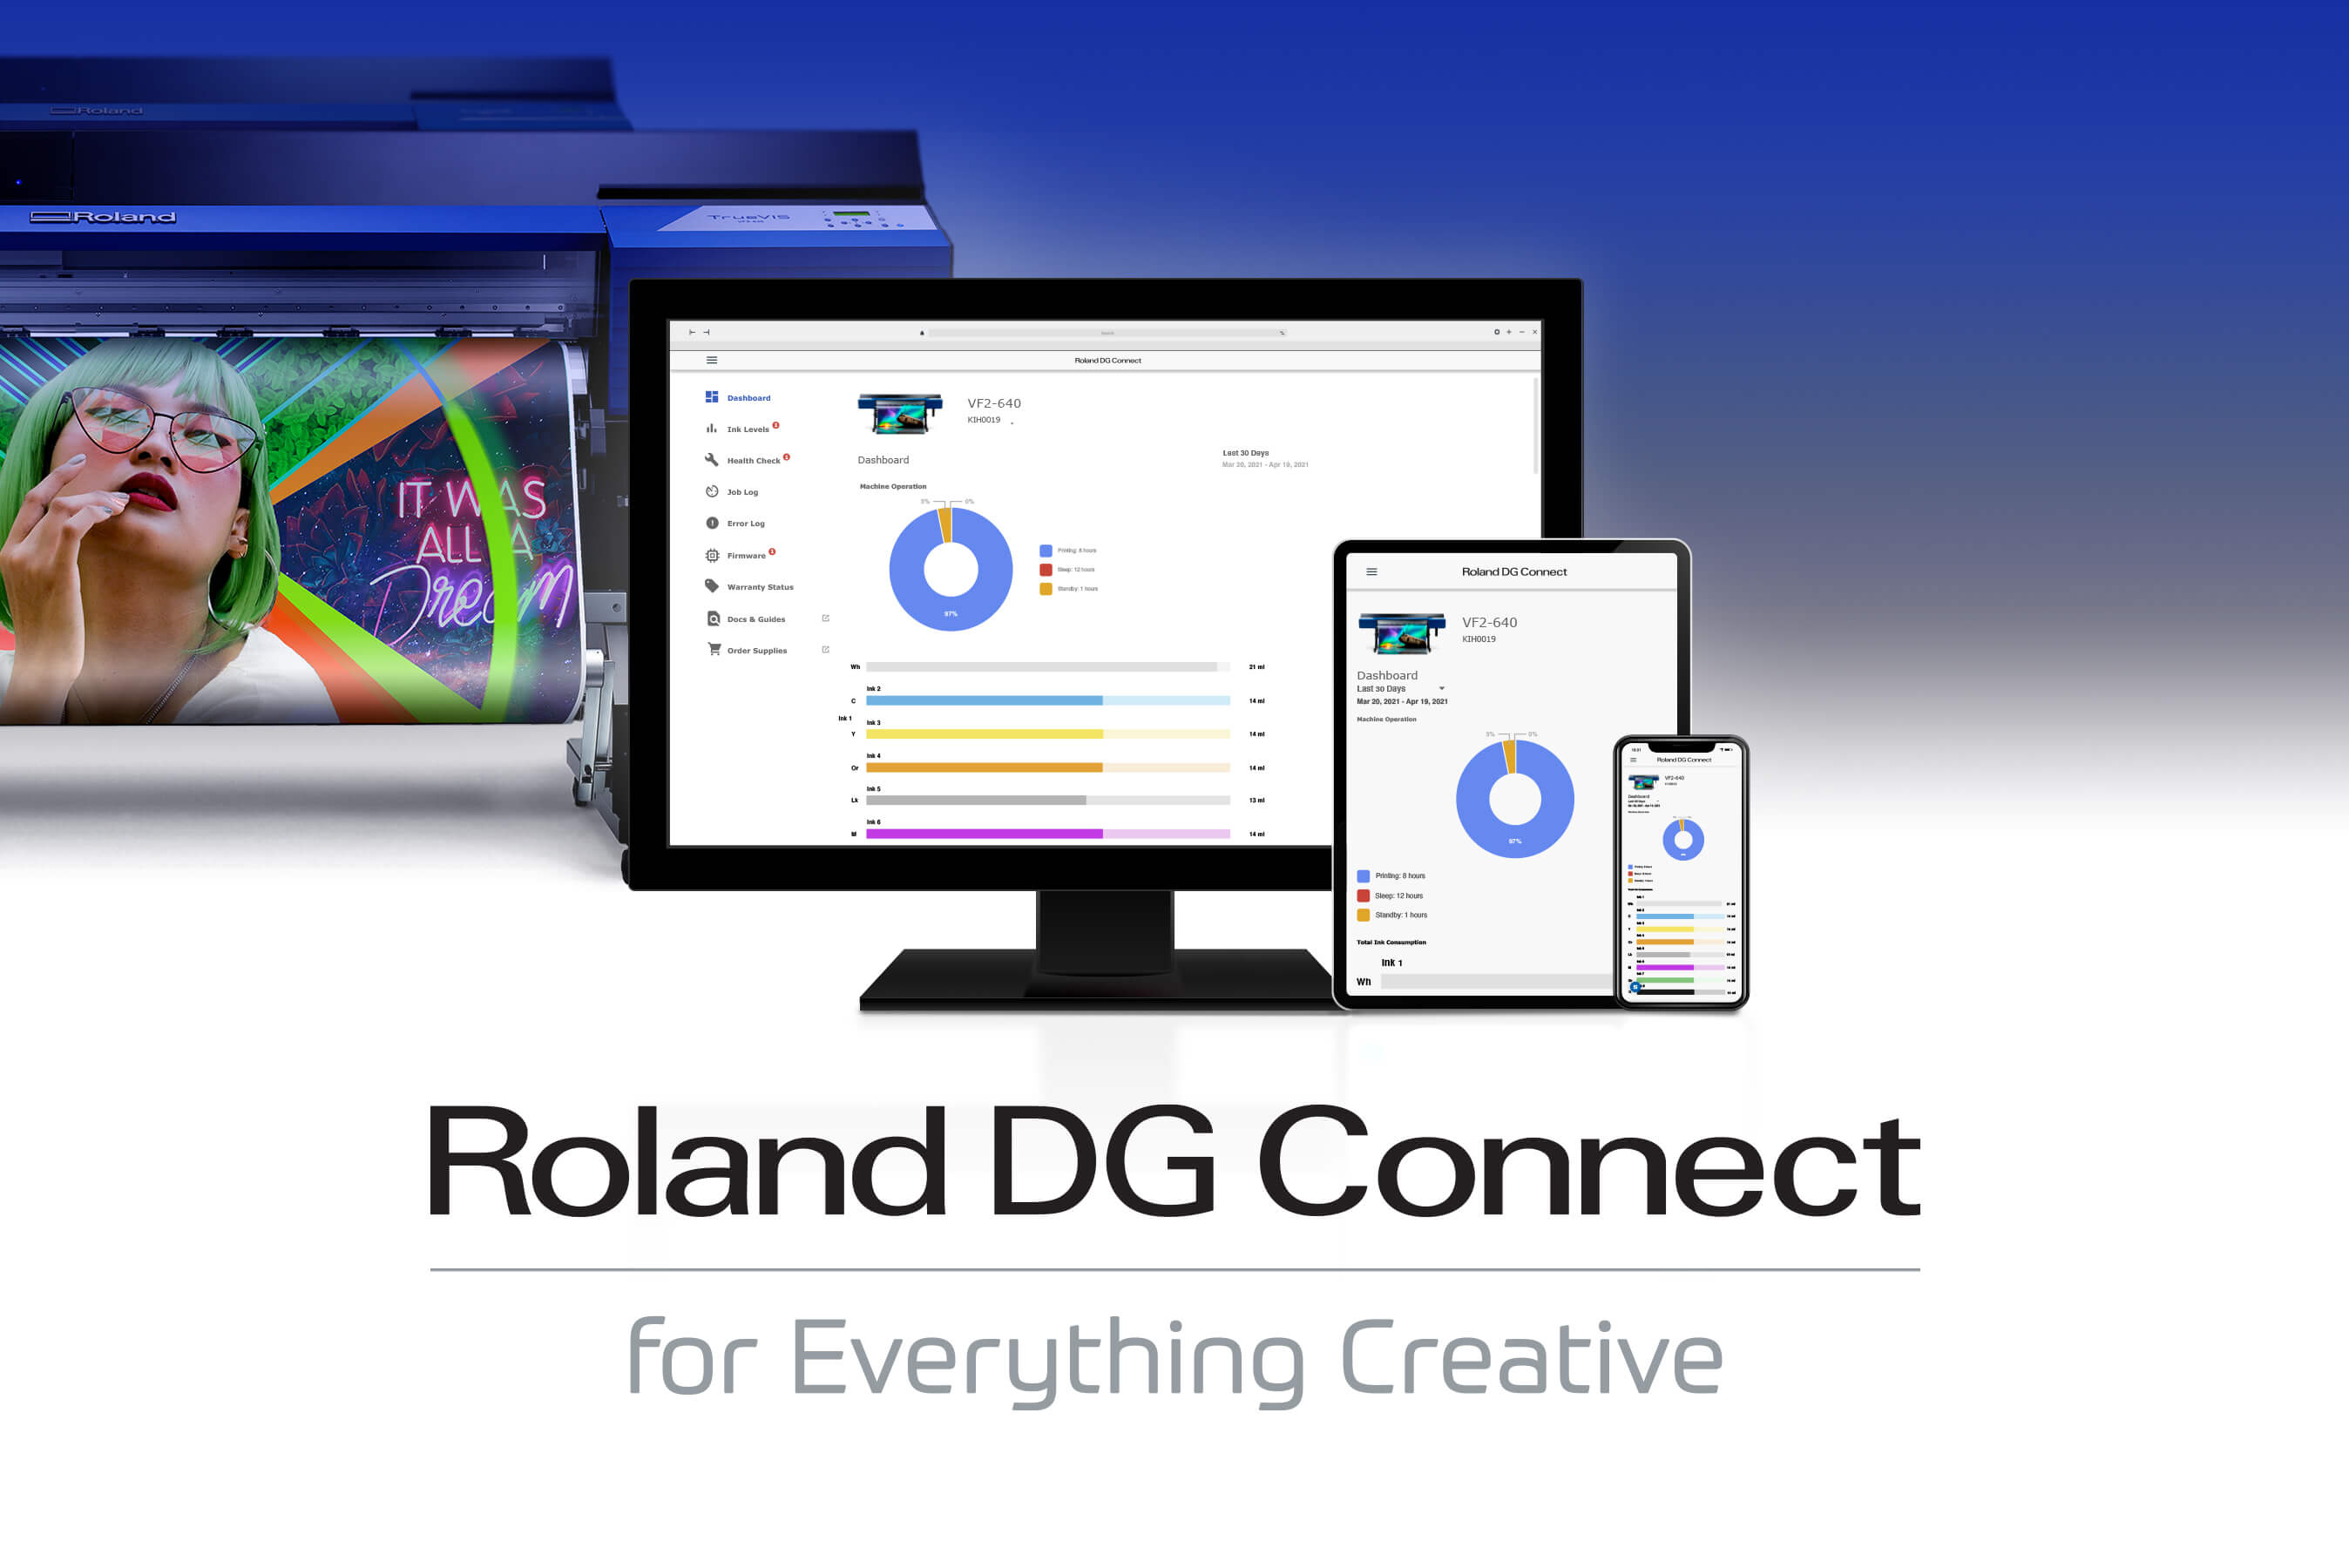 Captura de pantalla de la nueva App Roland DG Connect